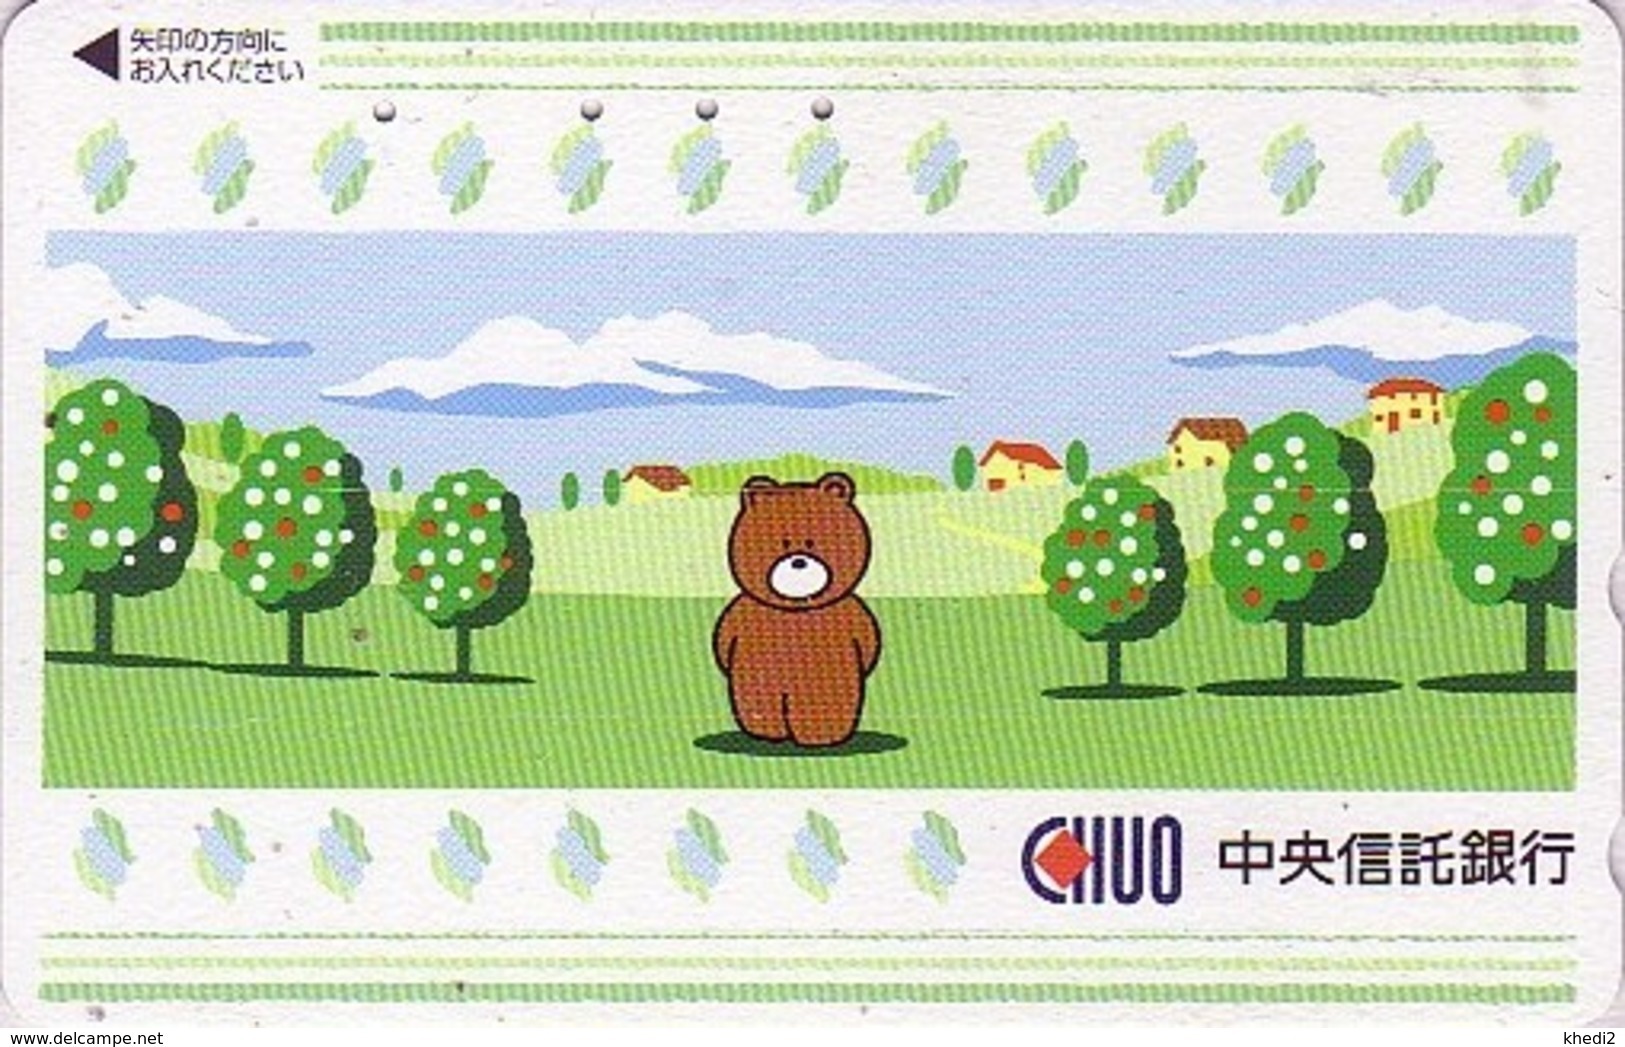 Télécarte Japon / 110-011 - BD Comics - Animal Série OURS CHUO - Teddy BEAR Japan Phonecard - 799 - BD